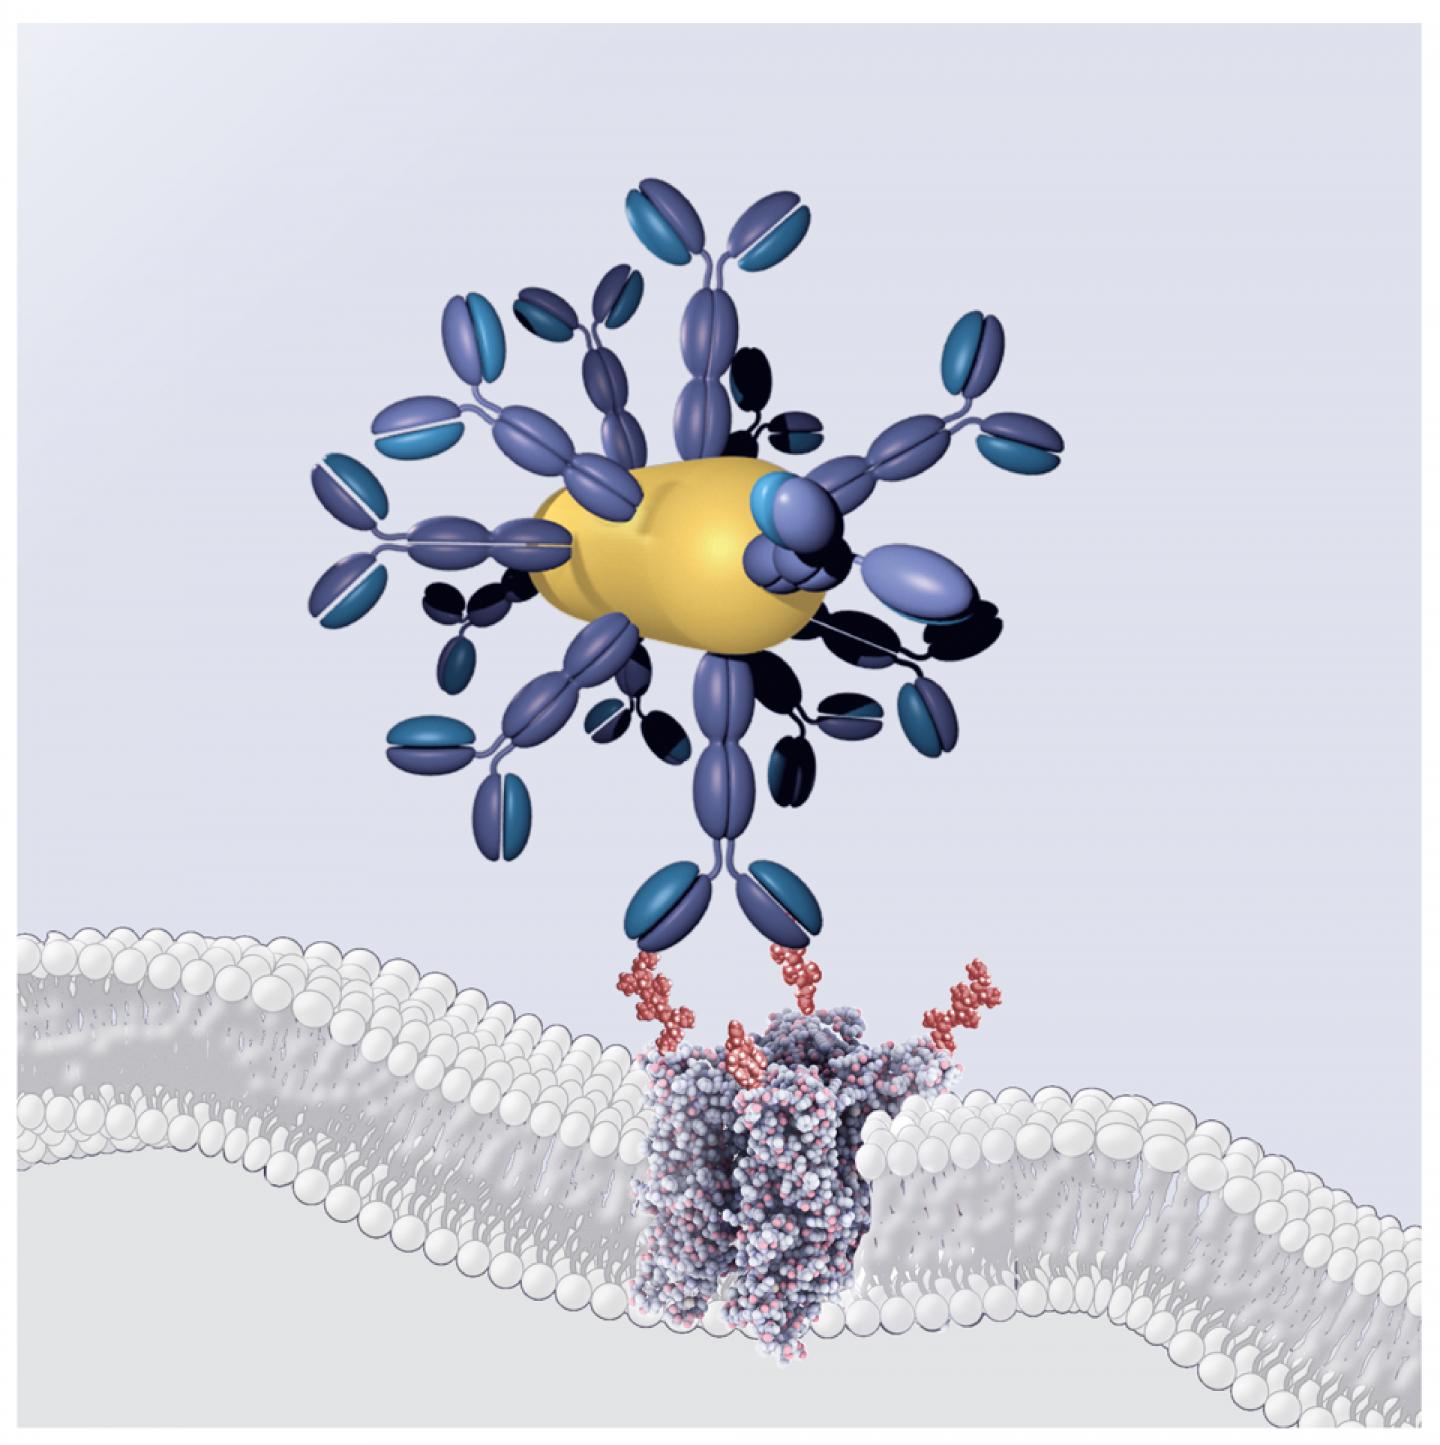 Antibody-Gold Nanorod-Conjugate